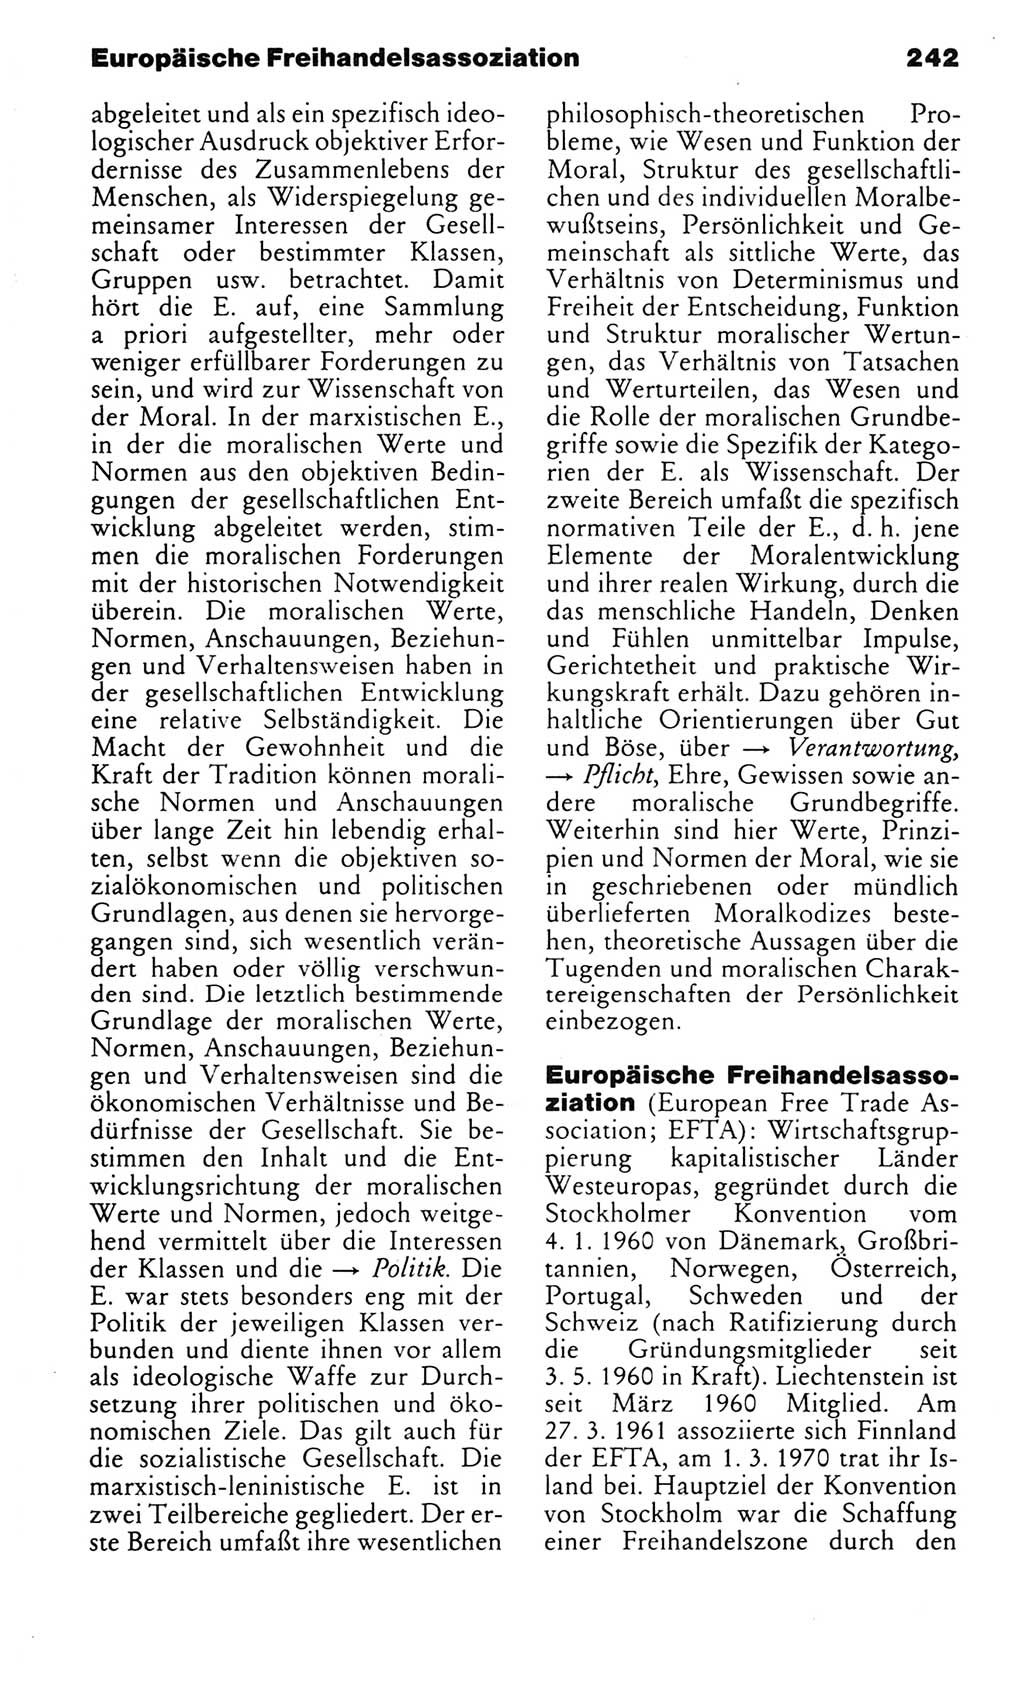 Kleines politisches Wörterbuch [Deutsche Demokratische Republik (DDR)] 1983, Seite 242 (Kl. pol. Wb. DDR 1983, S. 242)